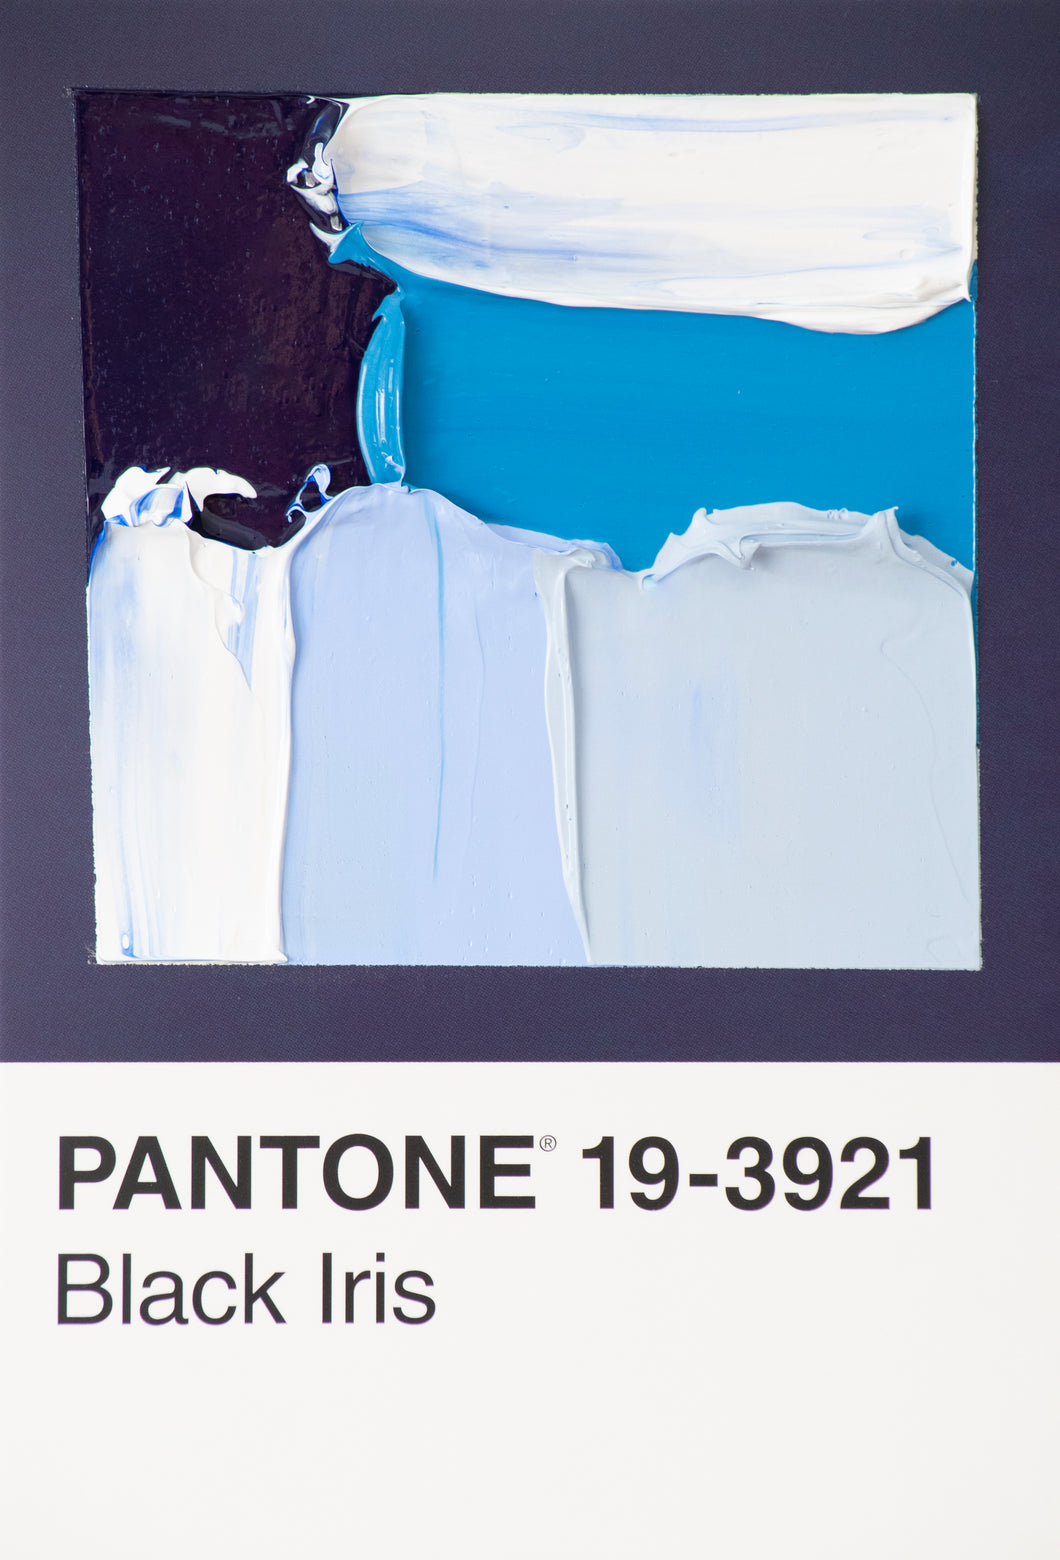 Pantone 19-3921 Black Iris